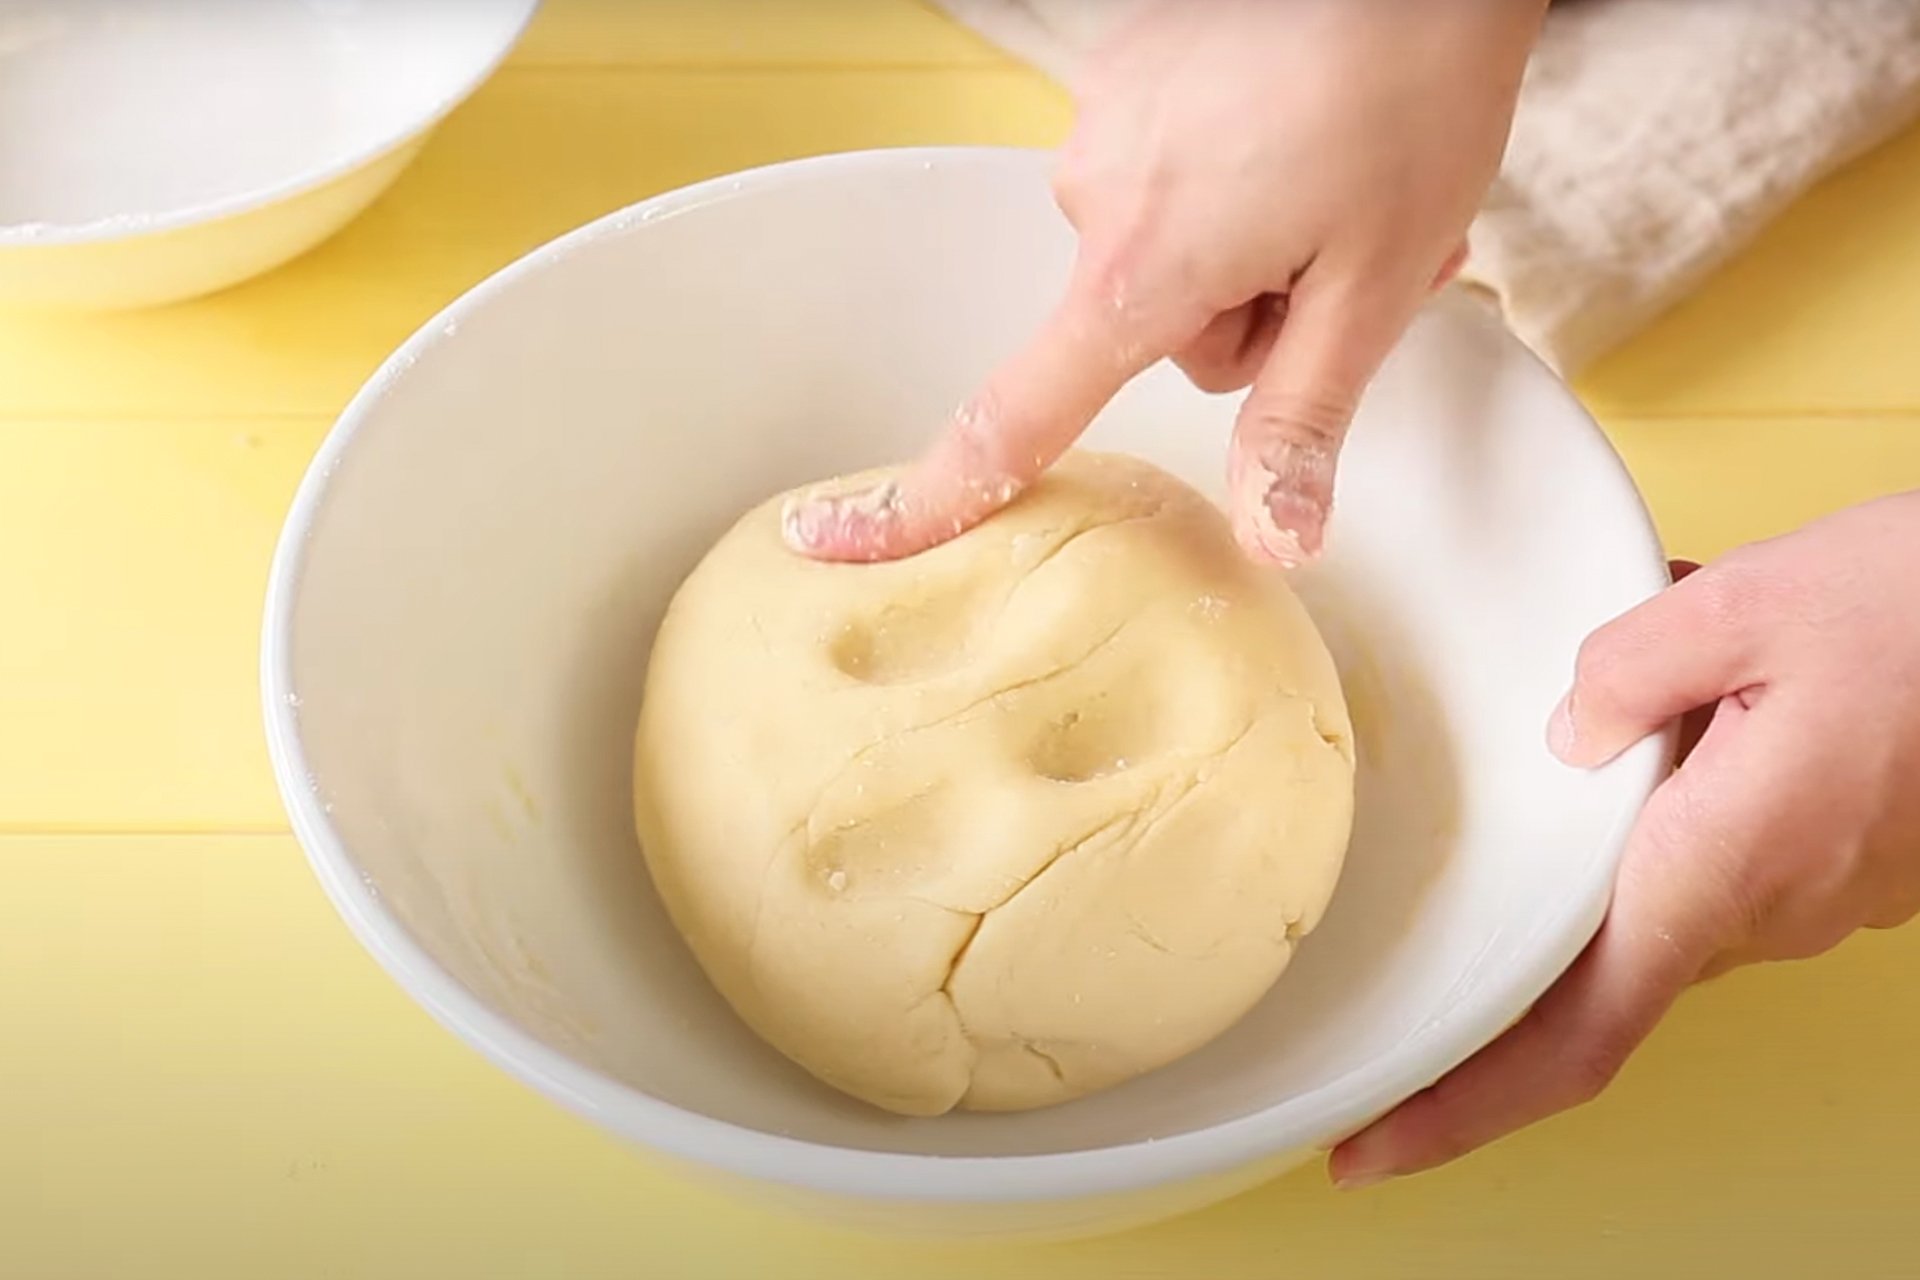 Cestini gelato di pasta frolla - Step 1